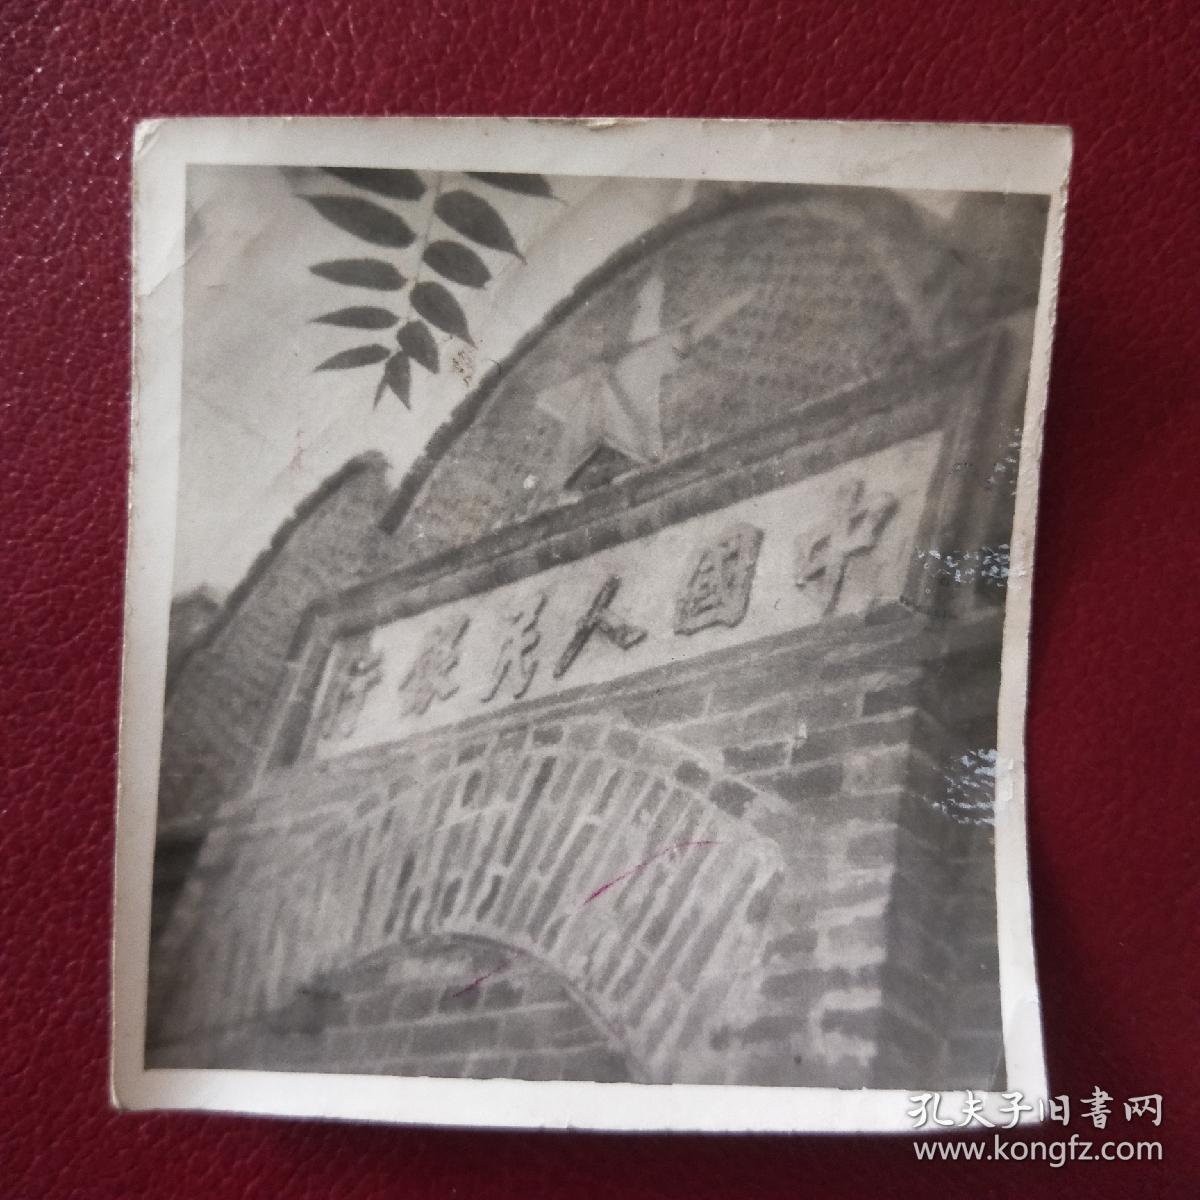 中国人民银行磁窑旧址老照片